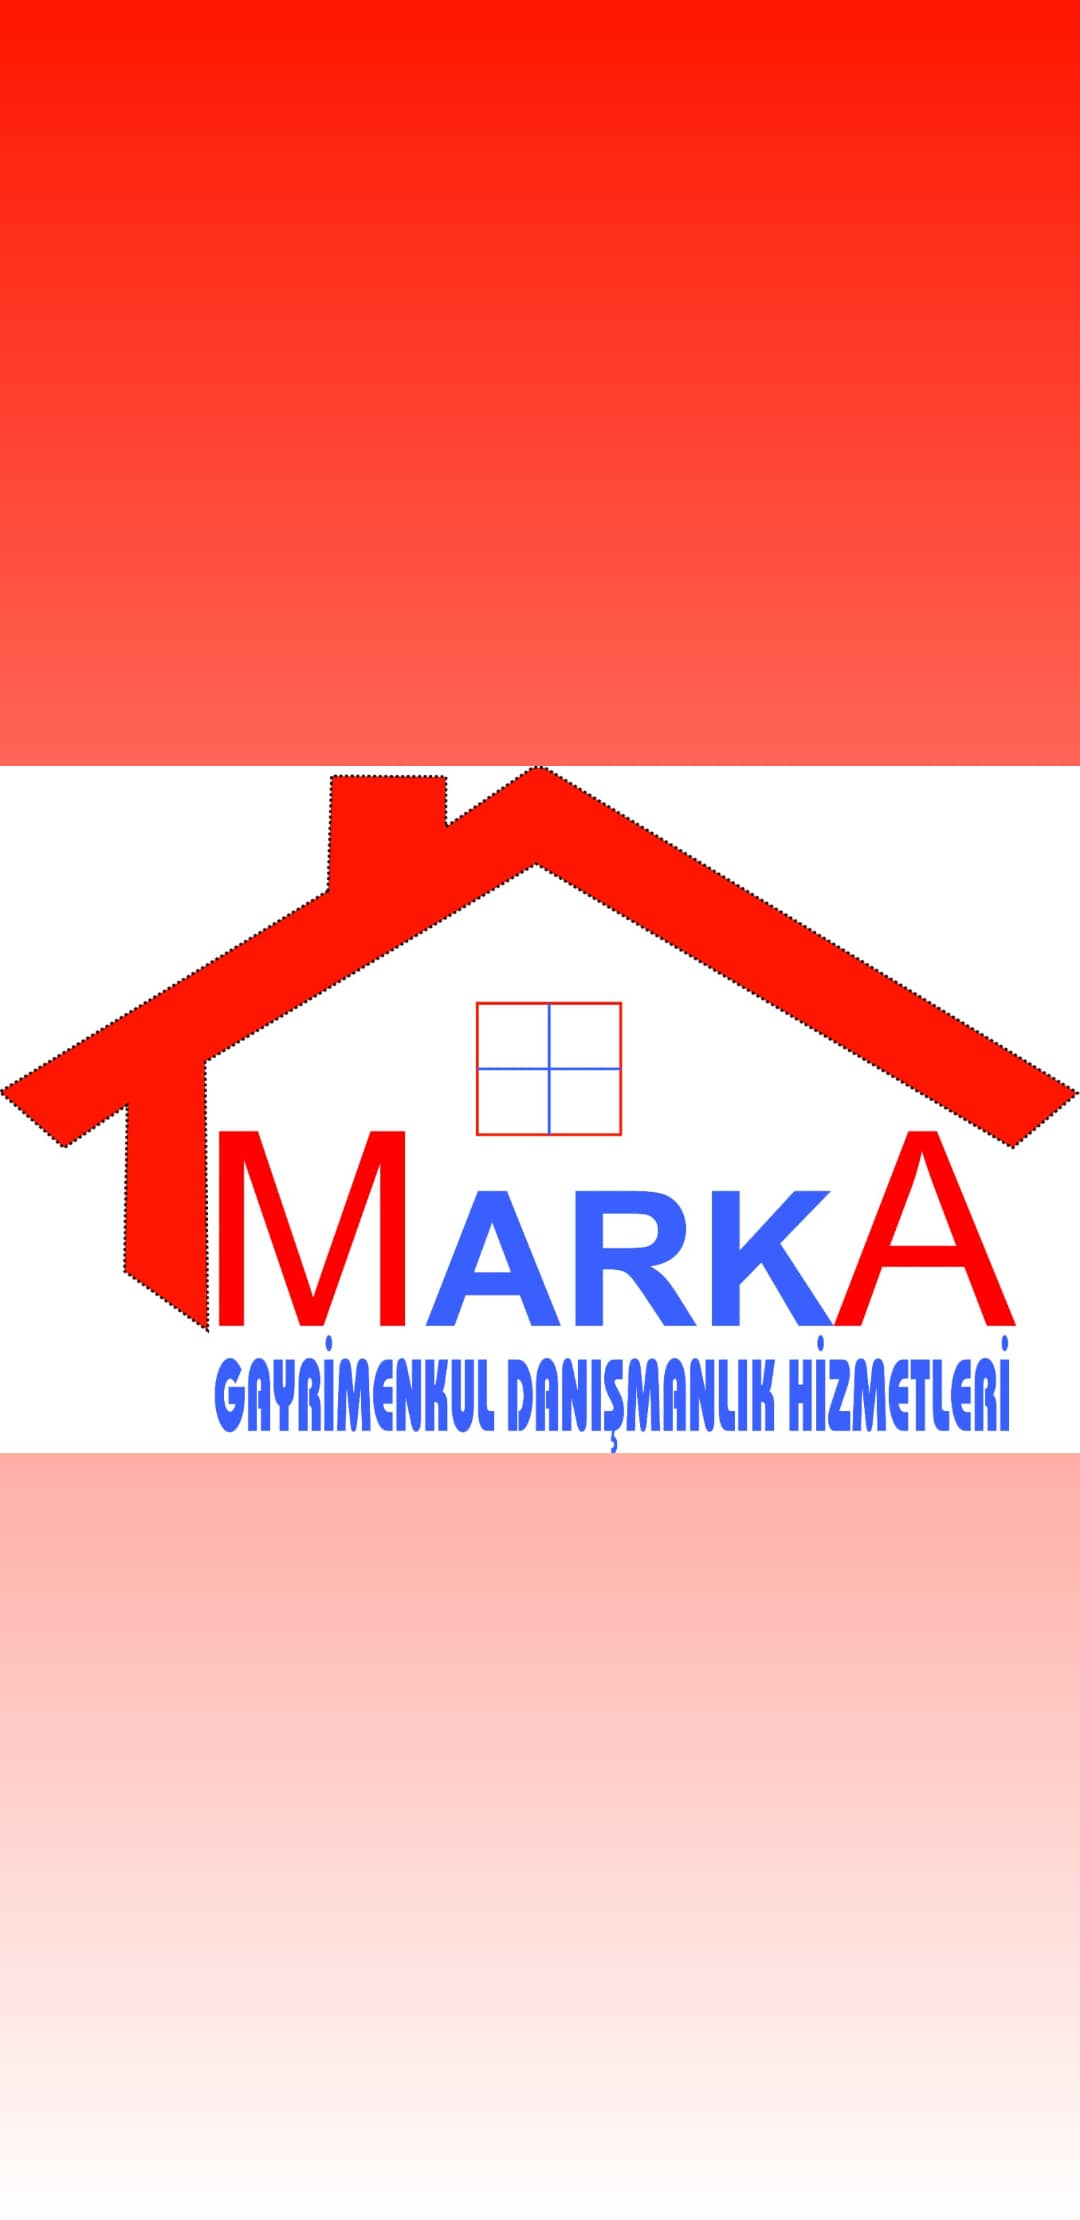 MarkA Gayrimenkul